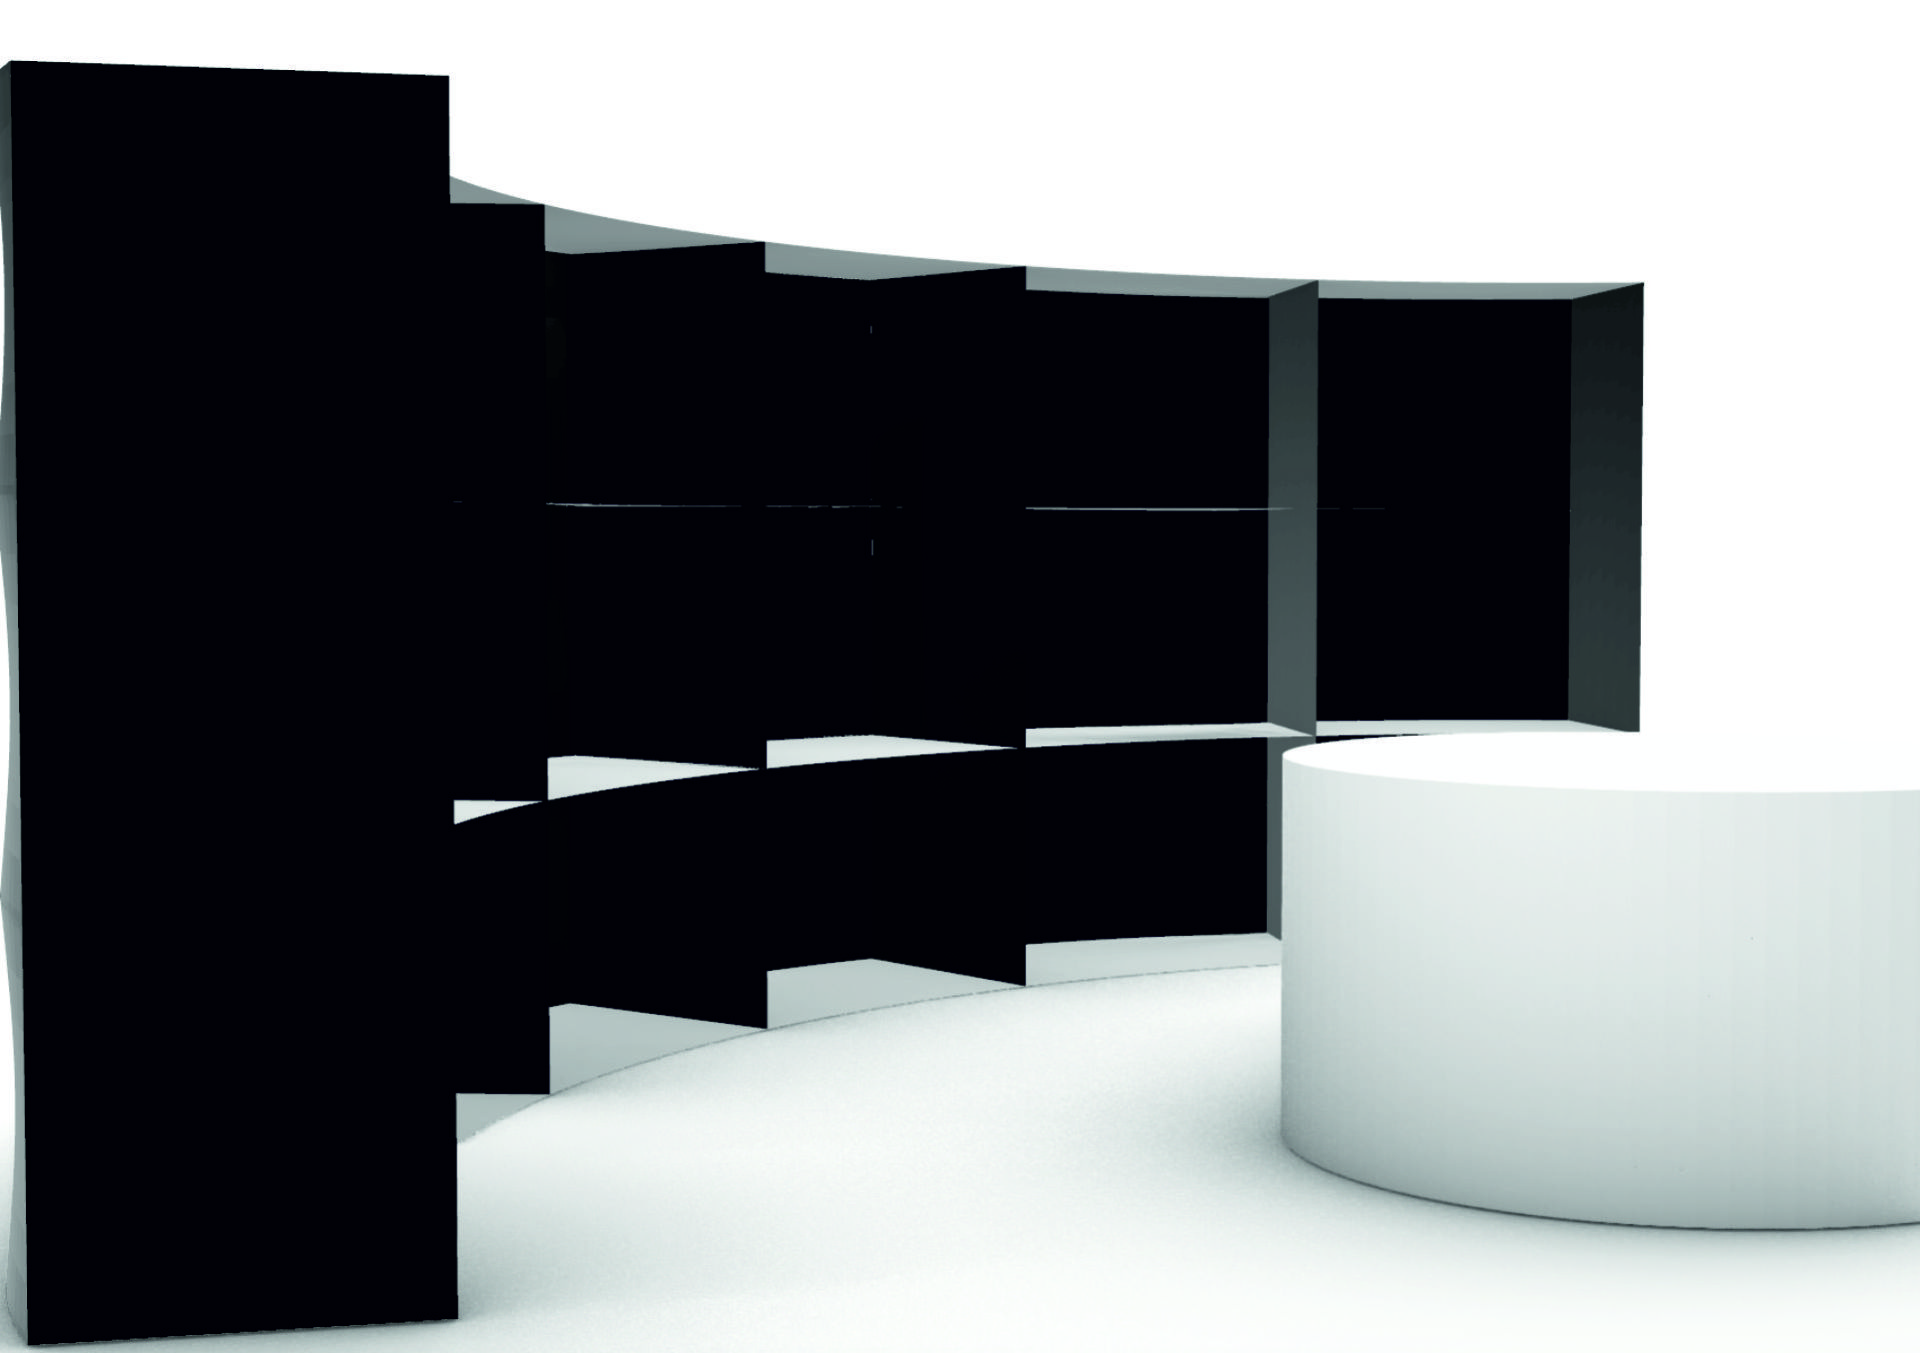 Półokrągła czarna konstrukcja z trzema poziomami. Każdy poziom podzielony pionowymi ścianami na małe pokoje. Z przodu biała, okrągła forma bedąca przestrzenią dla widowni.